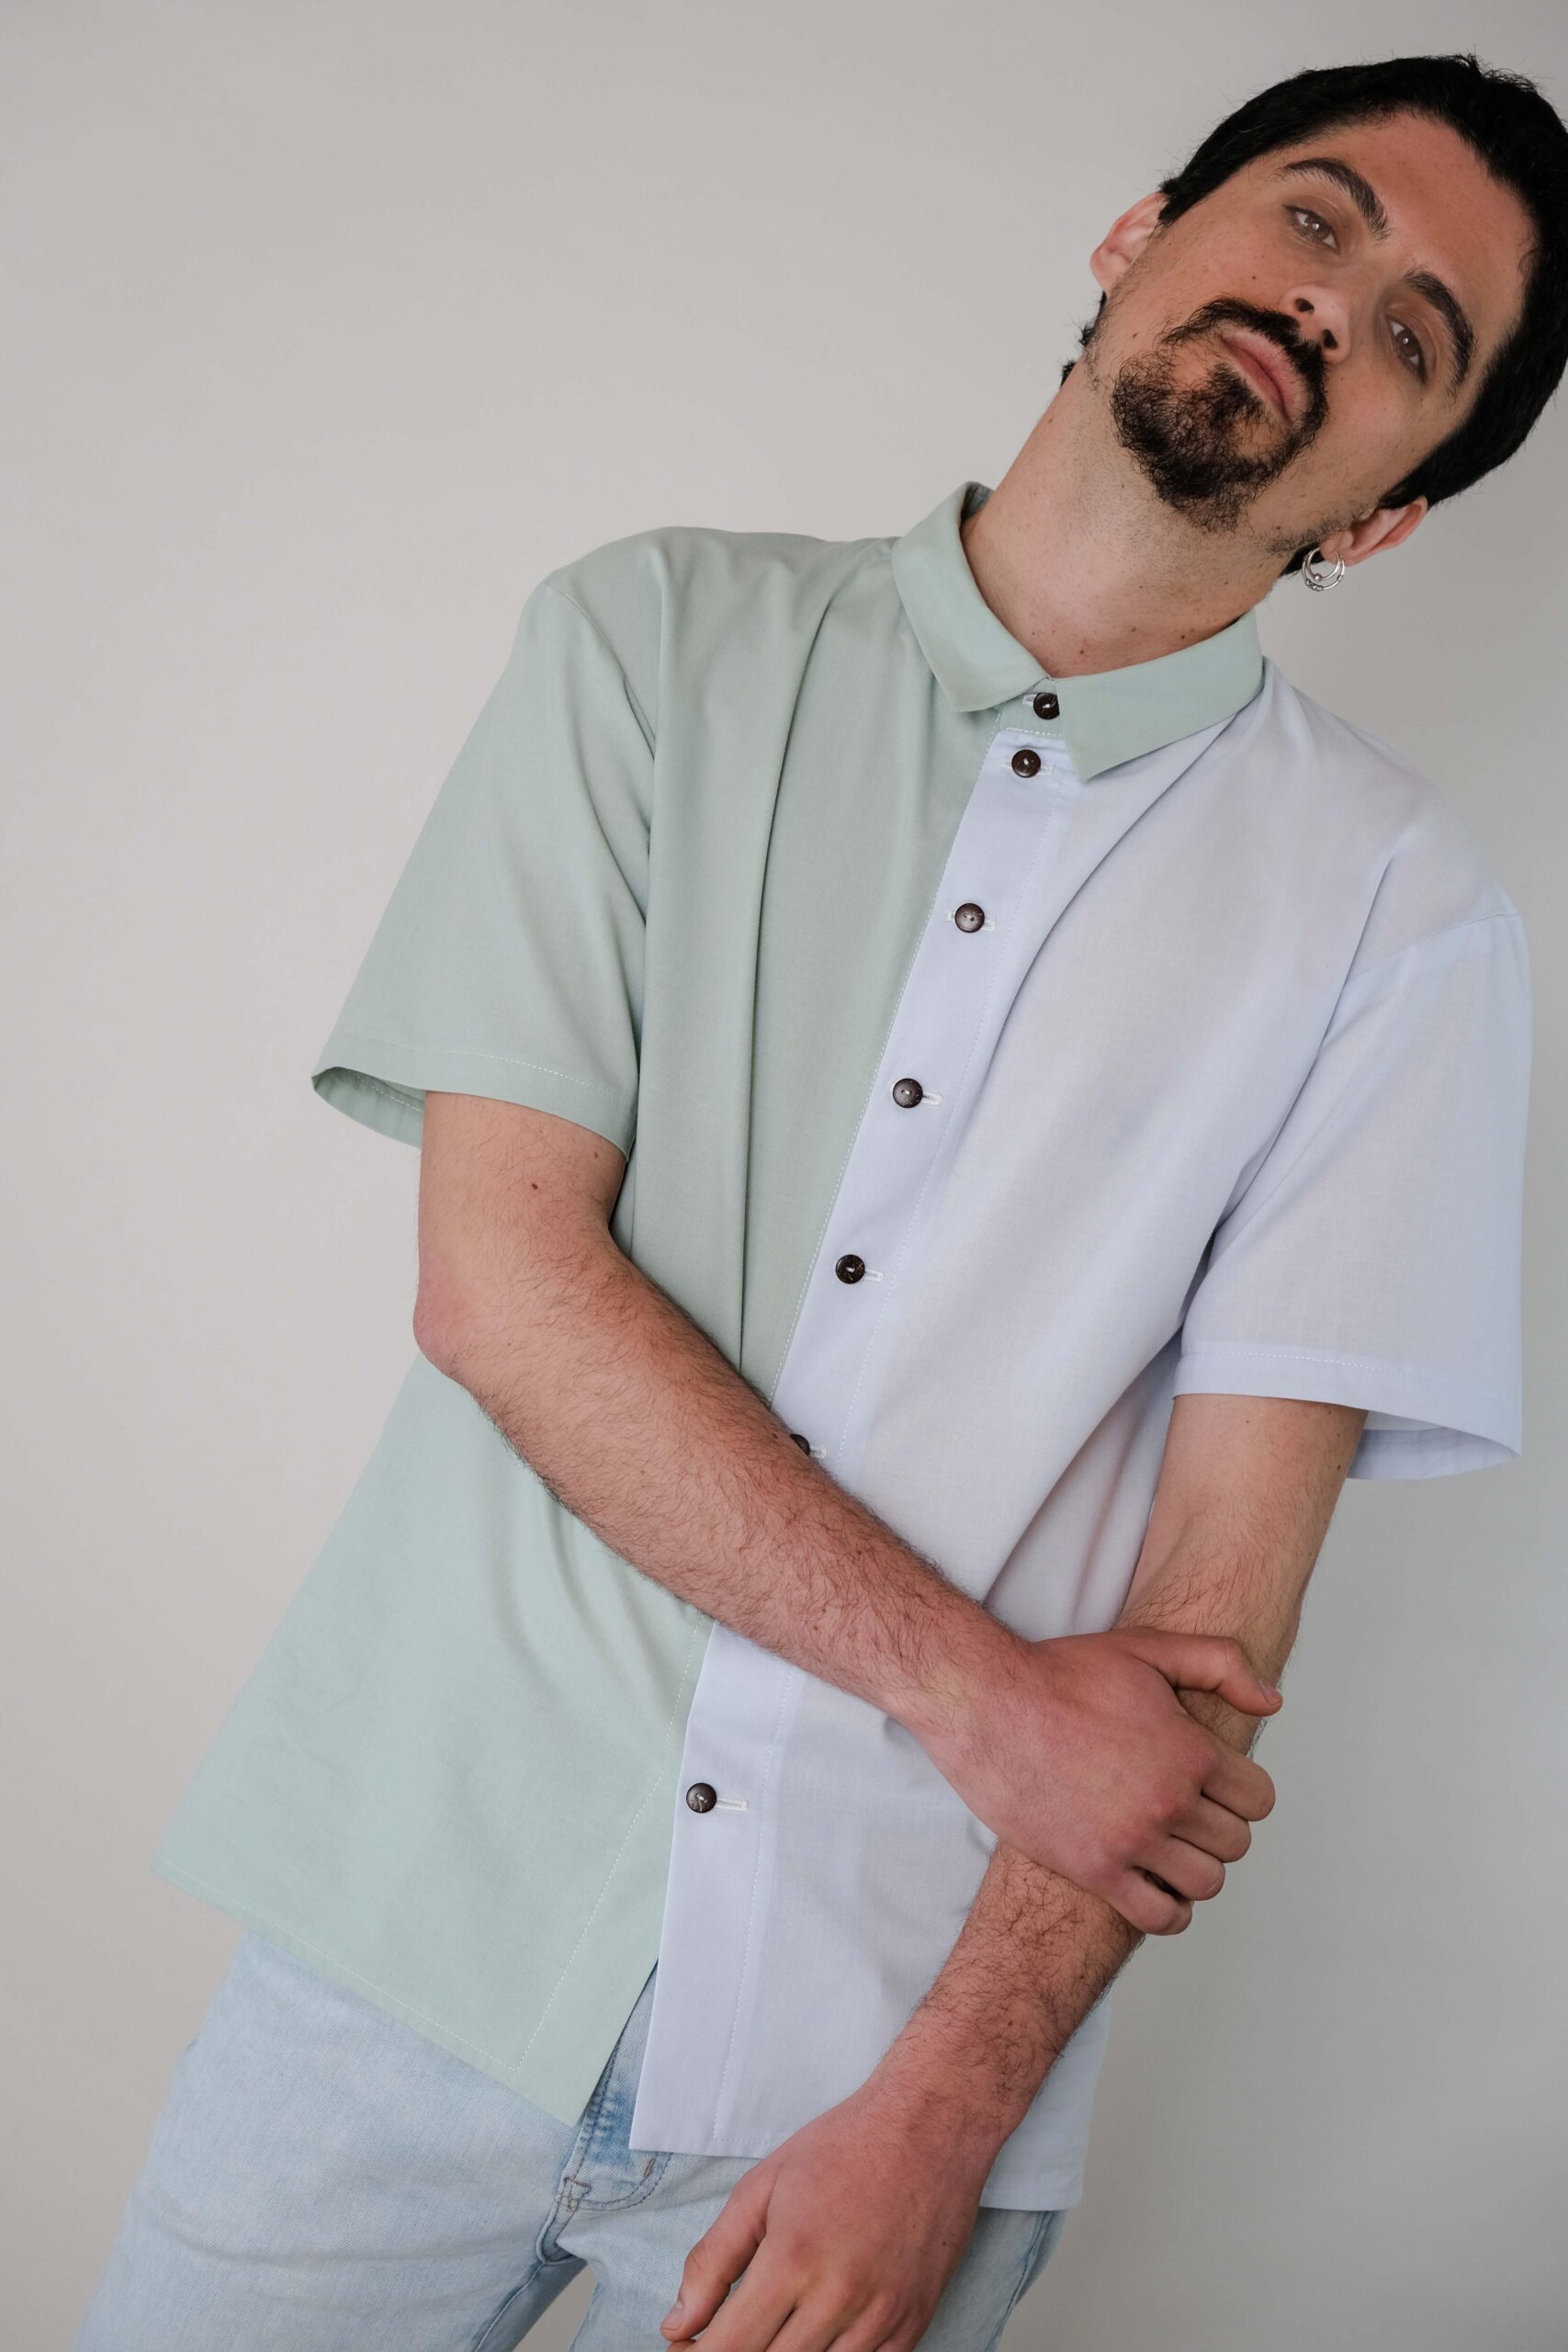 Camisa bicolor masculina hecha a mano